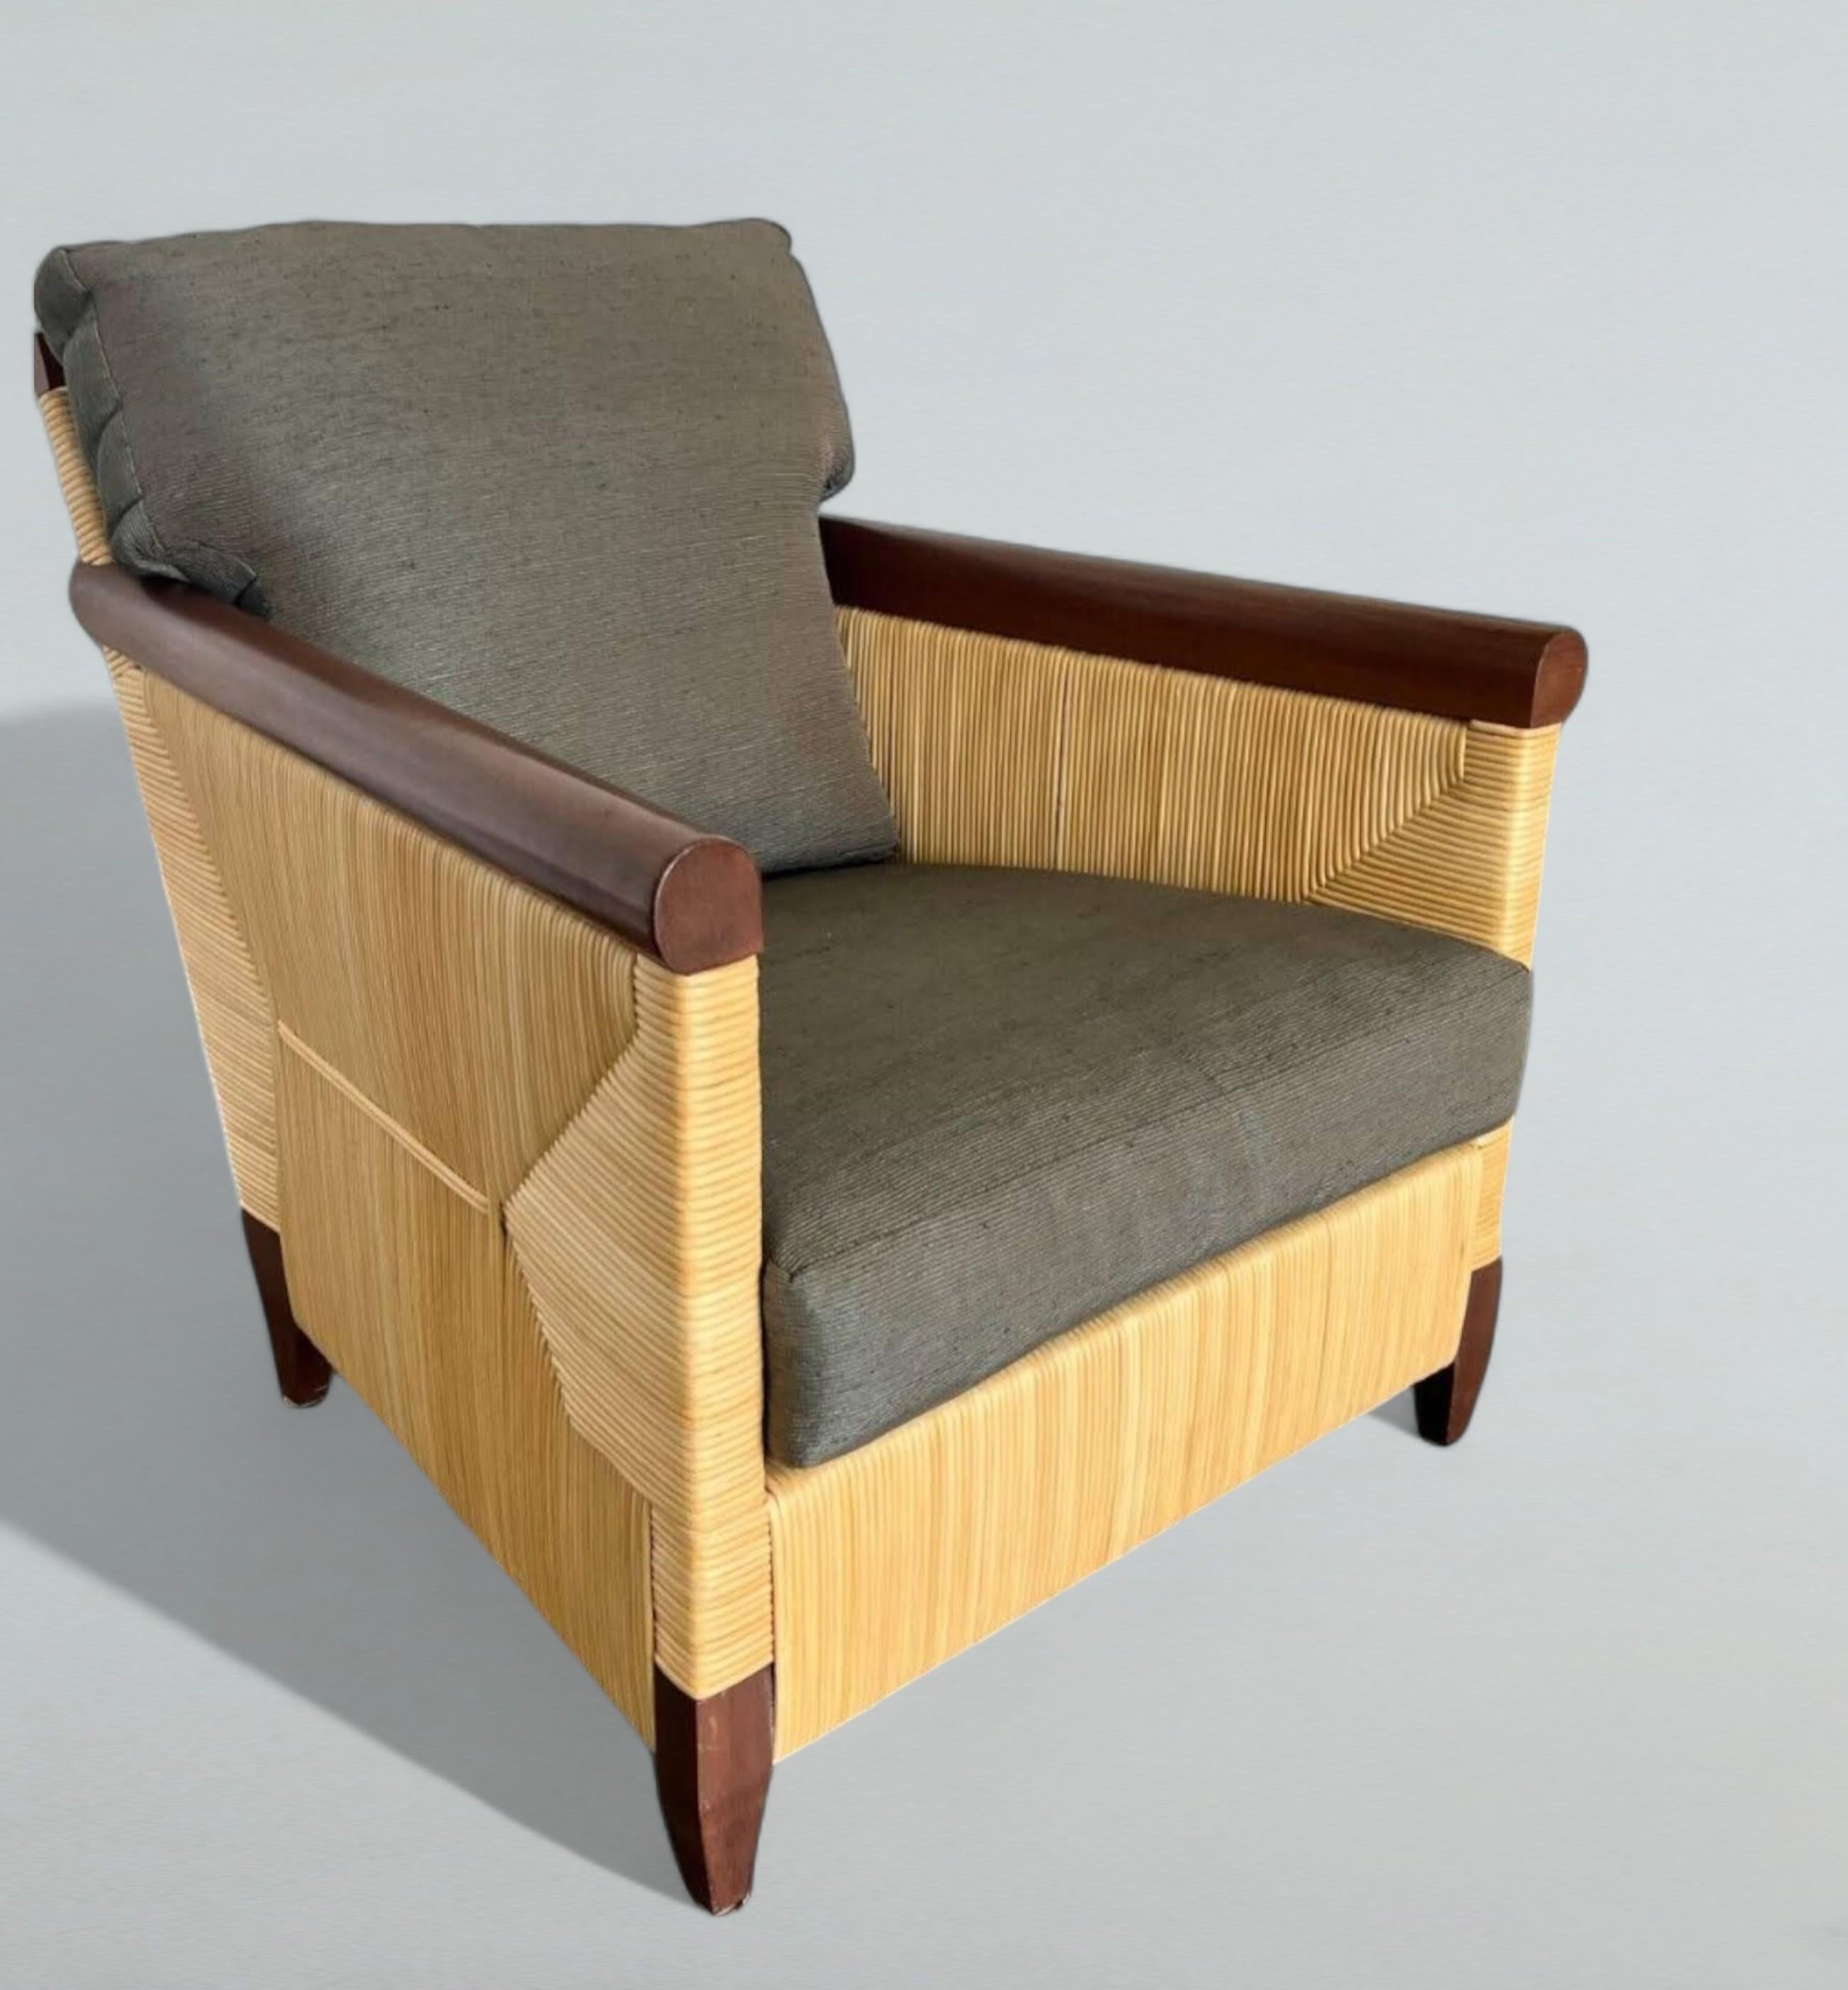 Un trio de chaises longues de John Hutton (1947-2006) pour Donghia, de la Collection côtière Merbau à production limitée, circa 1995.
JohnHutton a été le directeur du design de Donghia de 1978 à 1998 et est à l'origine des designs emblématiques de